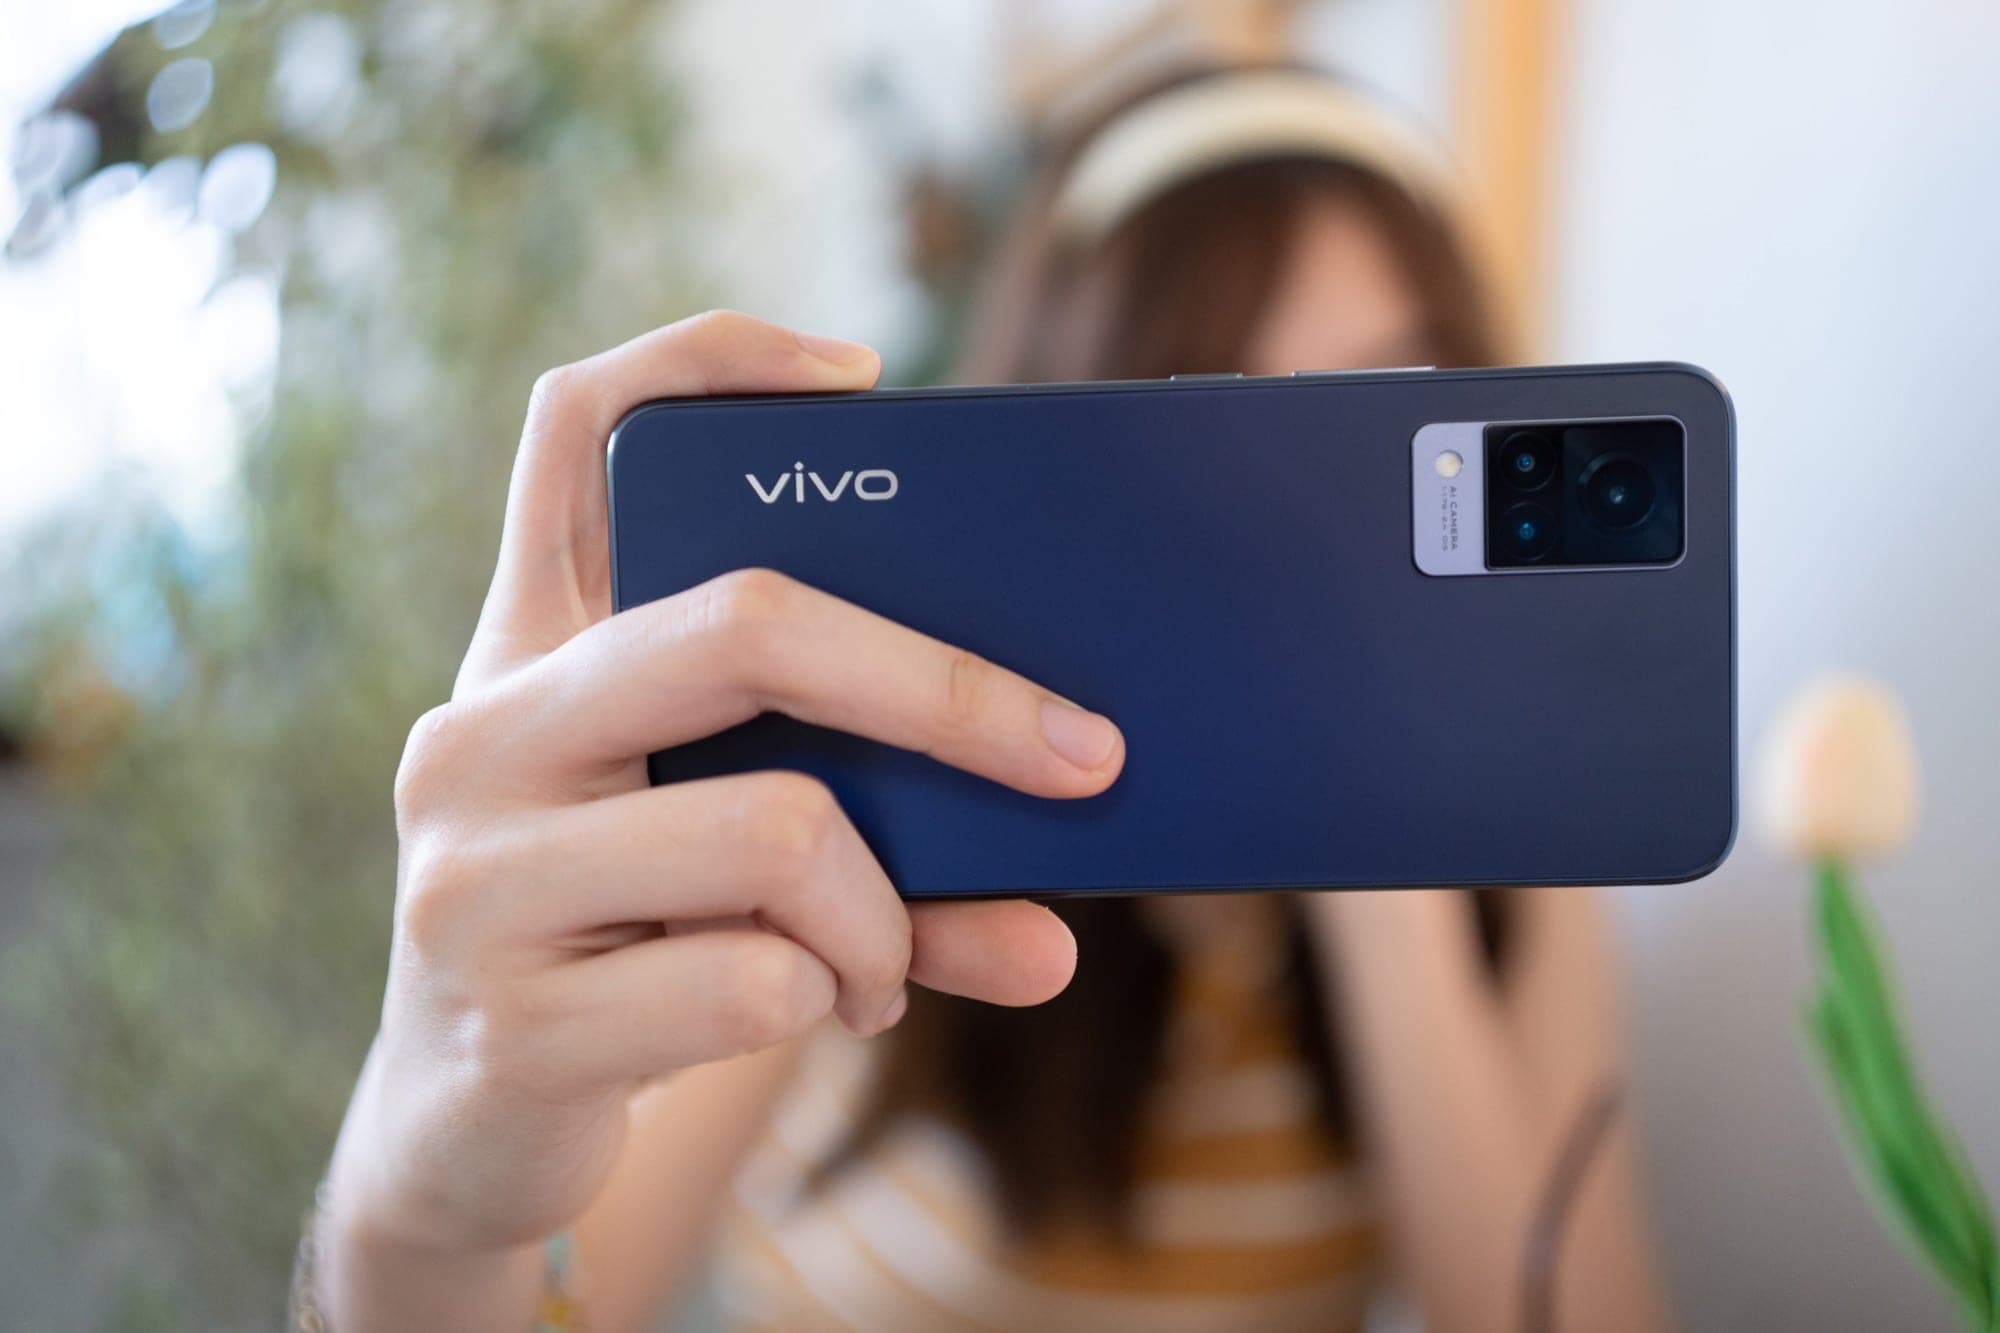 รีวิว Vivo V21 5G สมาร์ทโฟนที่กล้องหน้าดีเหมือนกล้องหลัง และแรมที่เป็นมากกว่าแรม 19